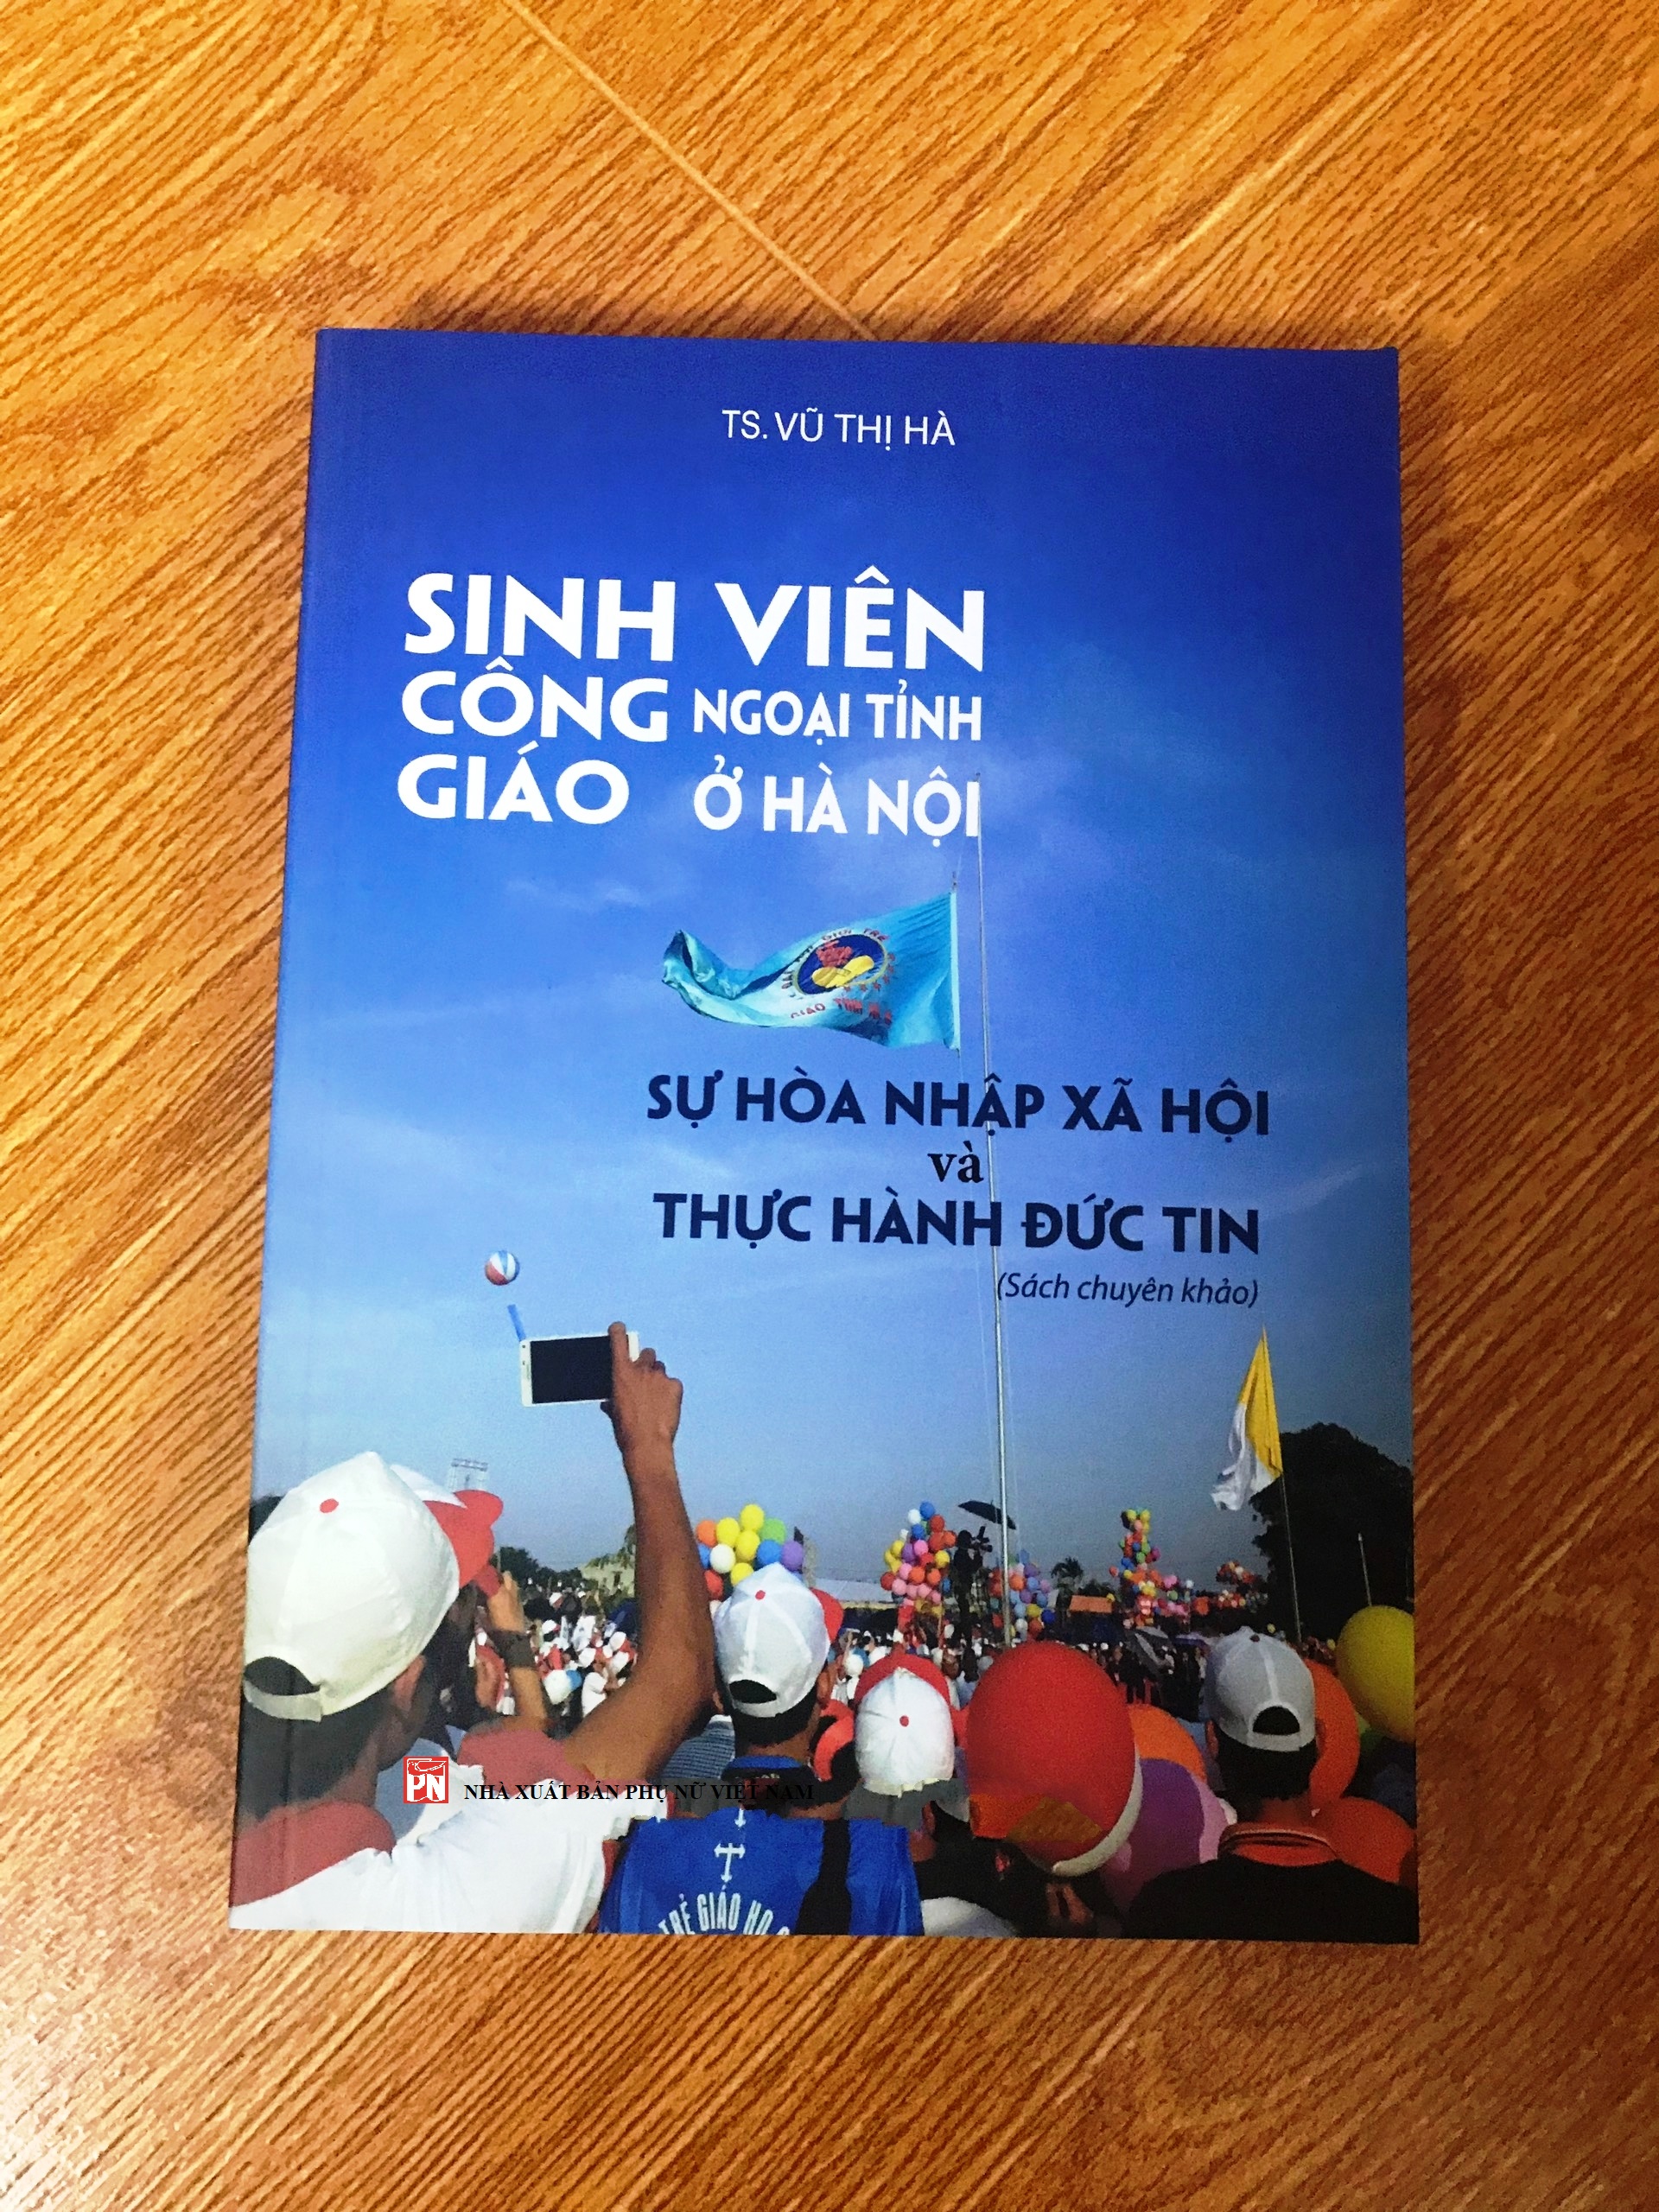 Sinh viên Công giáo ngoại tỉnh ở Hà Nội: Sự hoà nhập xã hội và thực hành đức tin (Sách chuyên khảo)